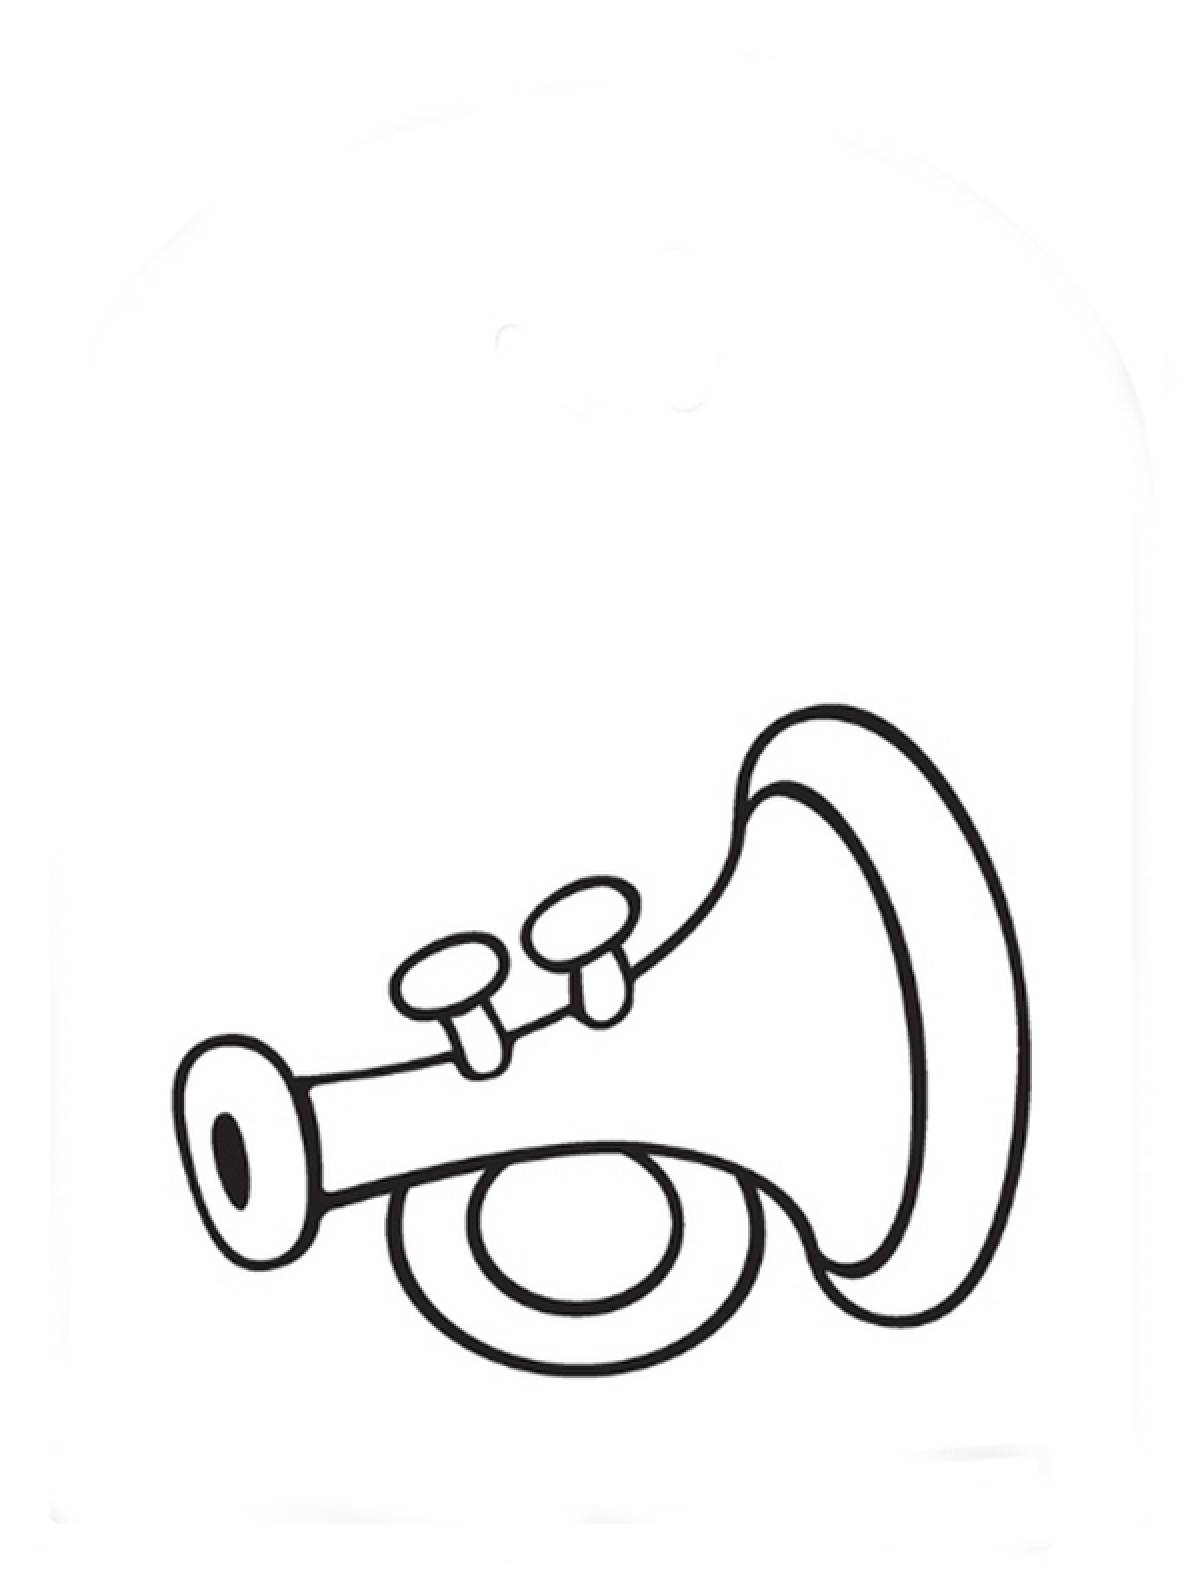 Подзорная труба пирата без фона. Раскраска. Векторная иллюстрация pdf. Черно-белый. Морская тема